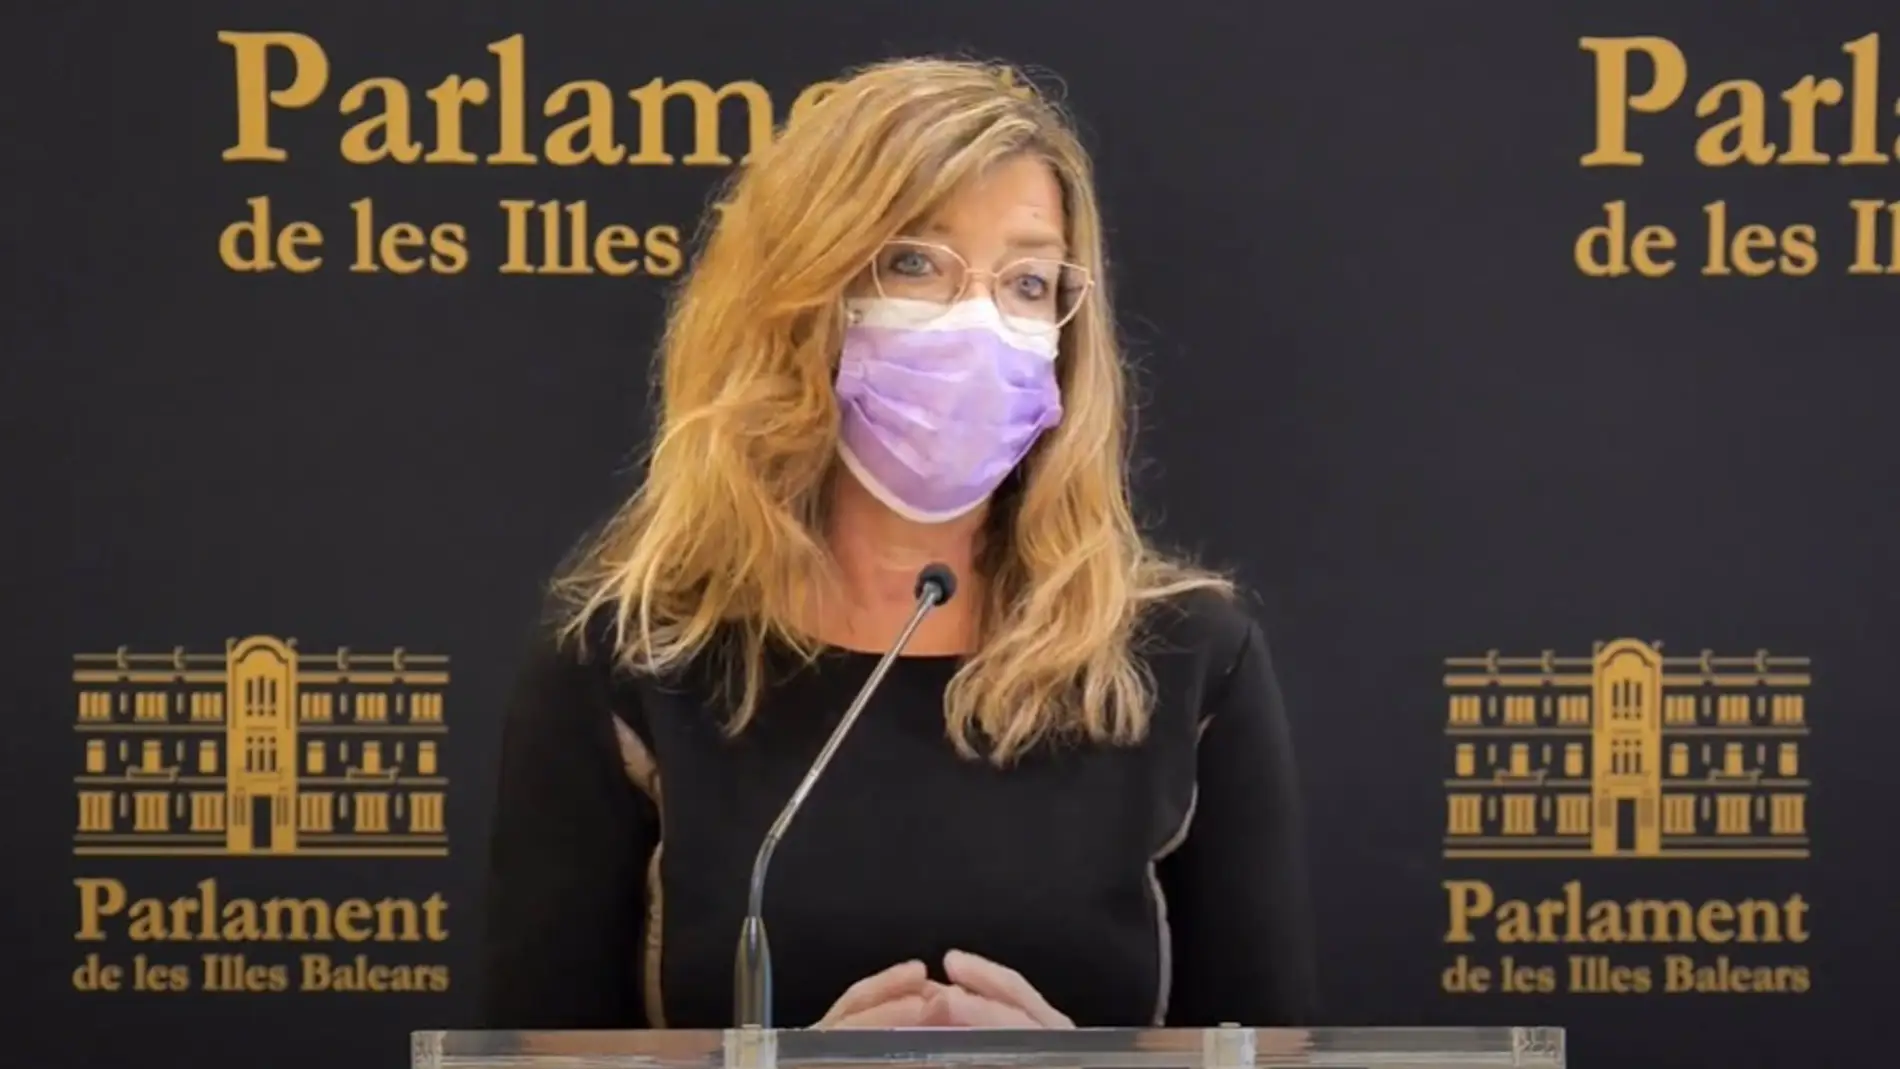 Salud alerta sobre la situación "preocupante" de la pandemia en Europa que "podría afectar" a Baleares